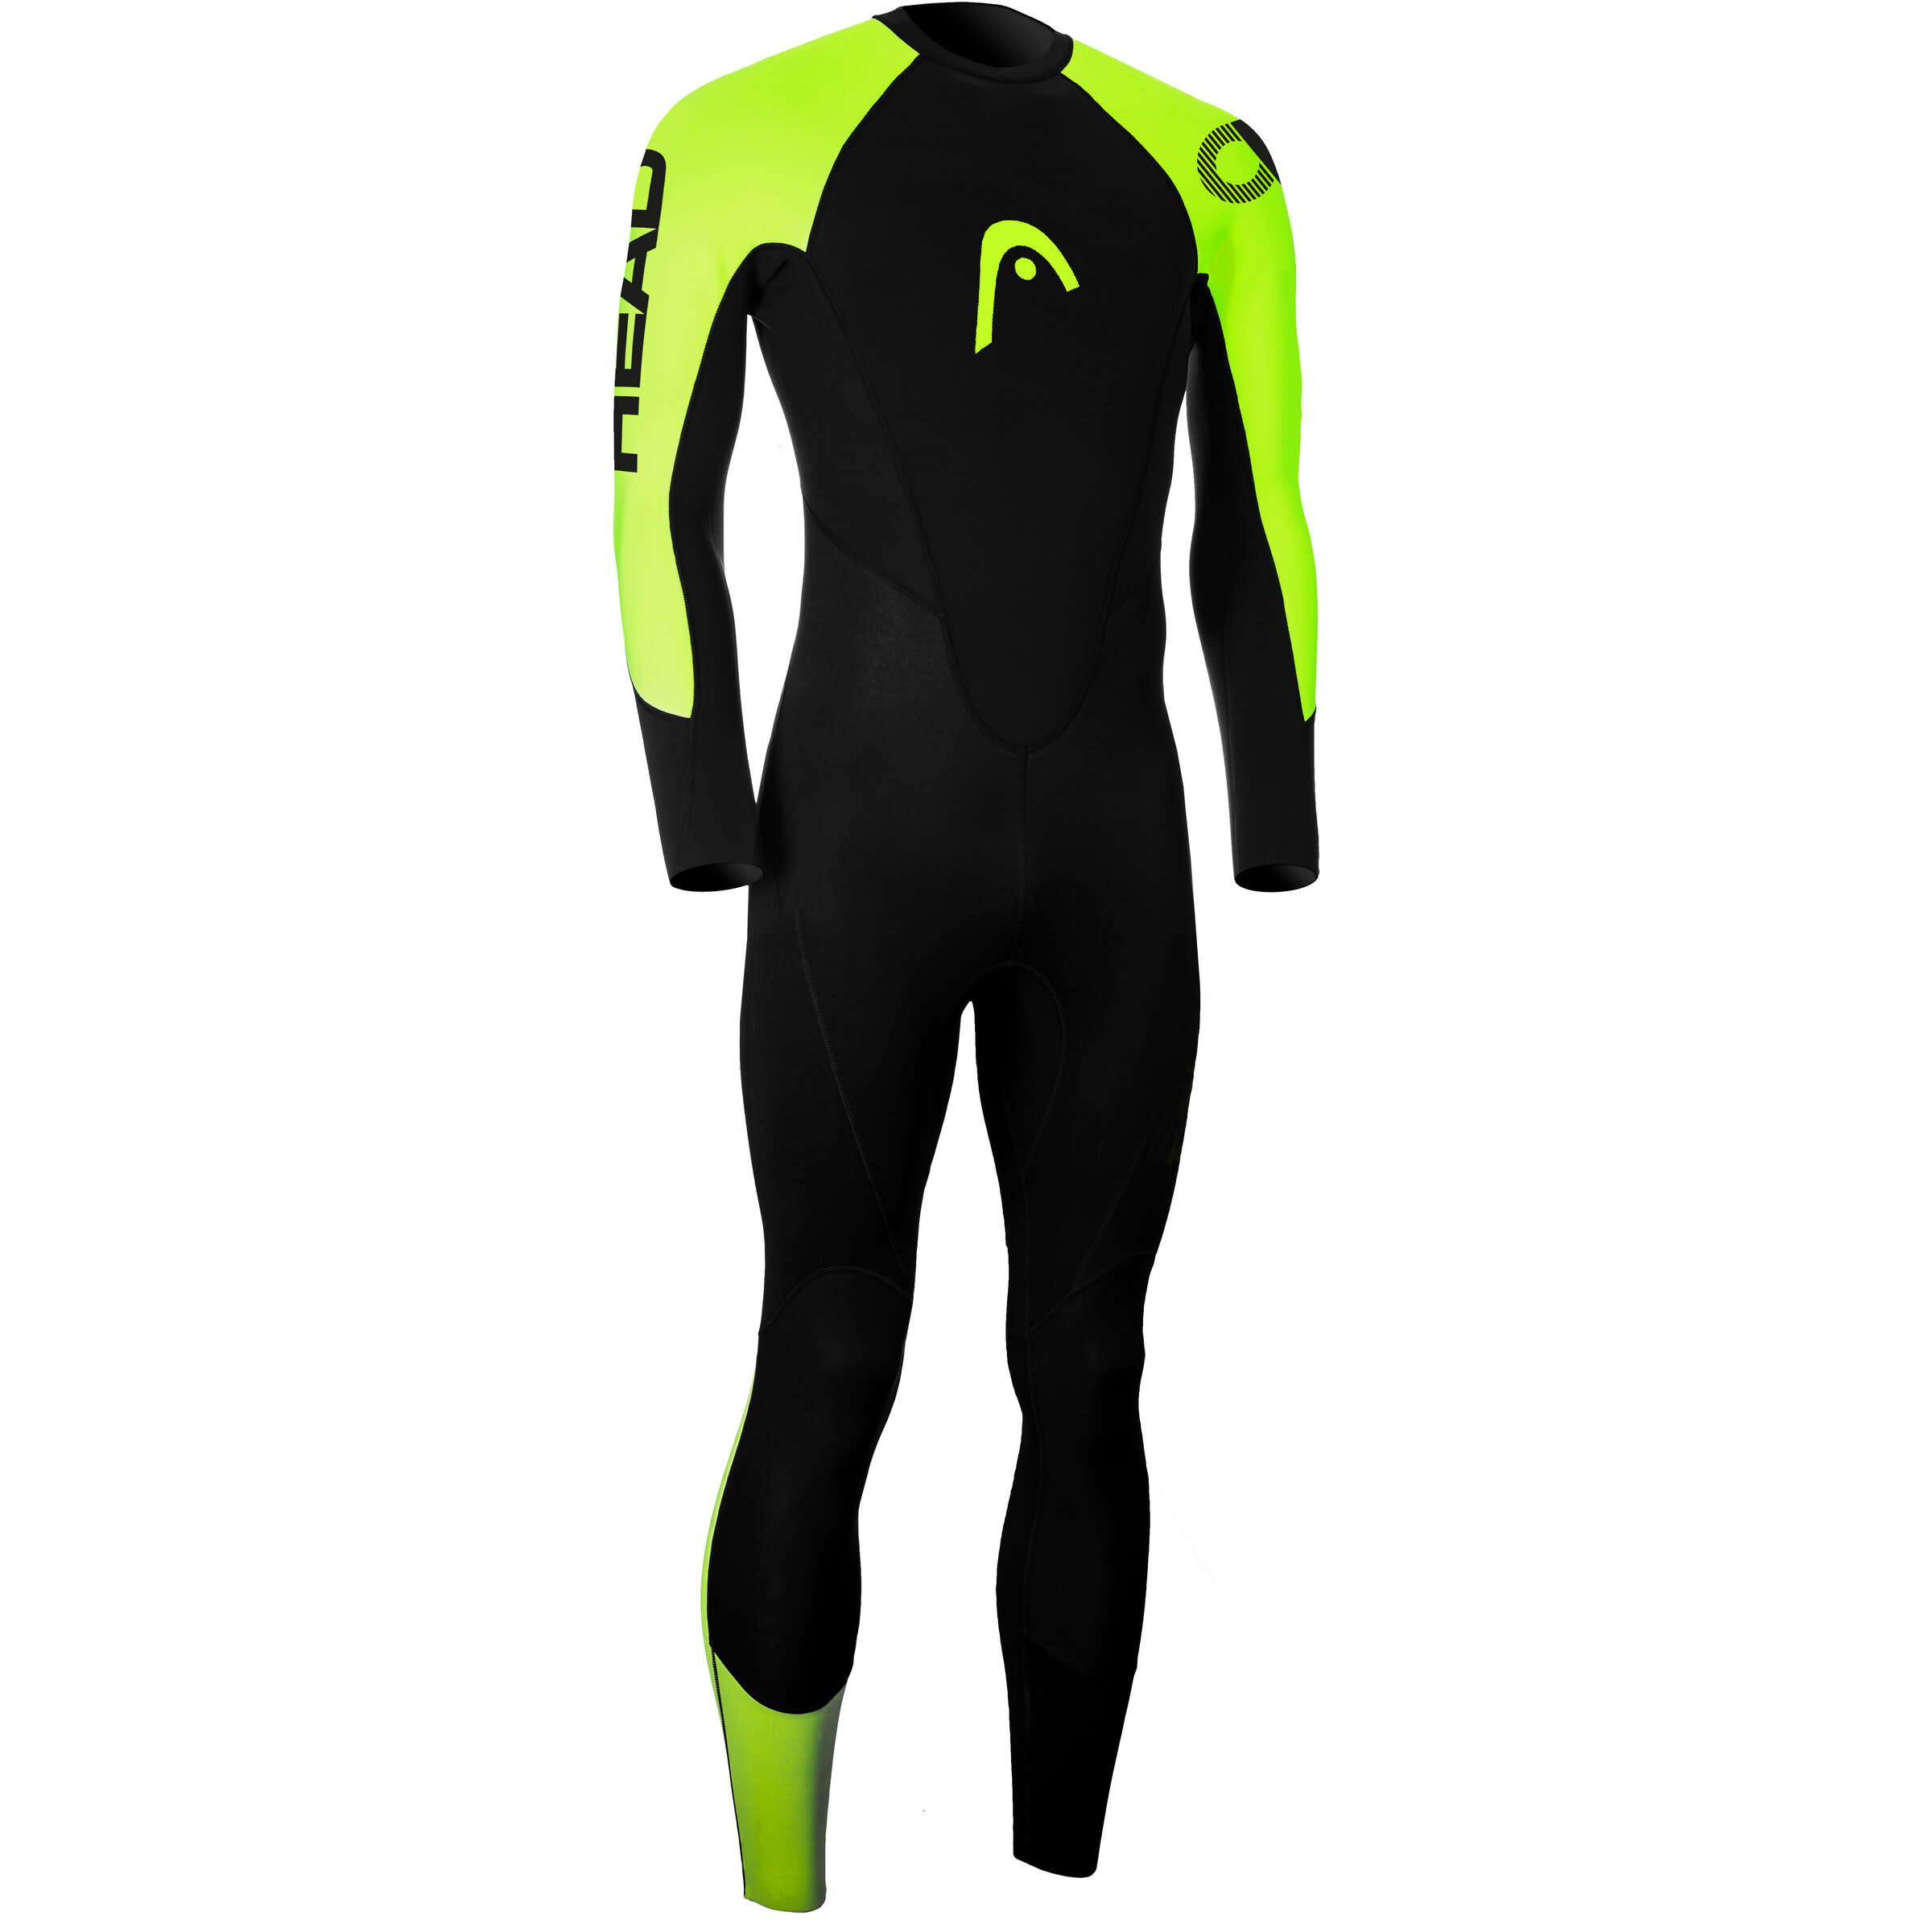 Men’s OW Explorer Wetsuit 3.2.2 Black/Lime